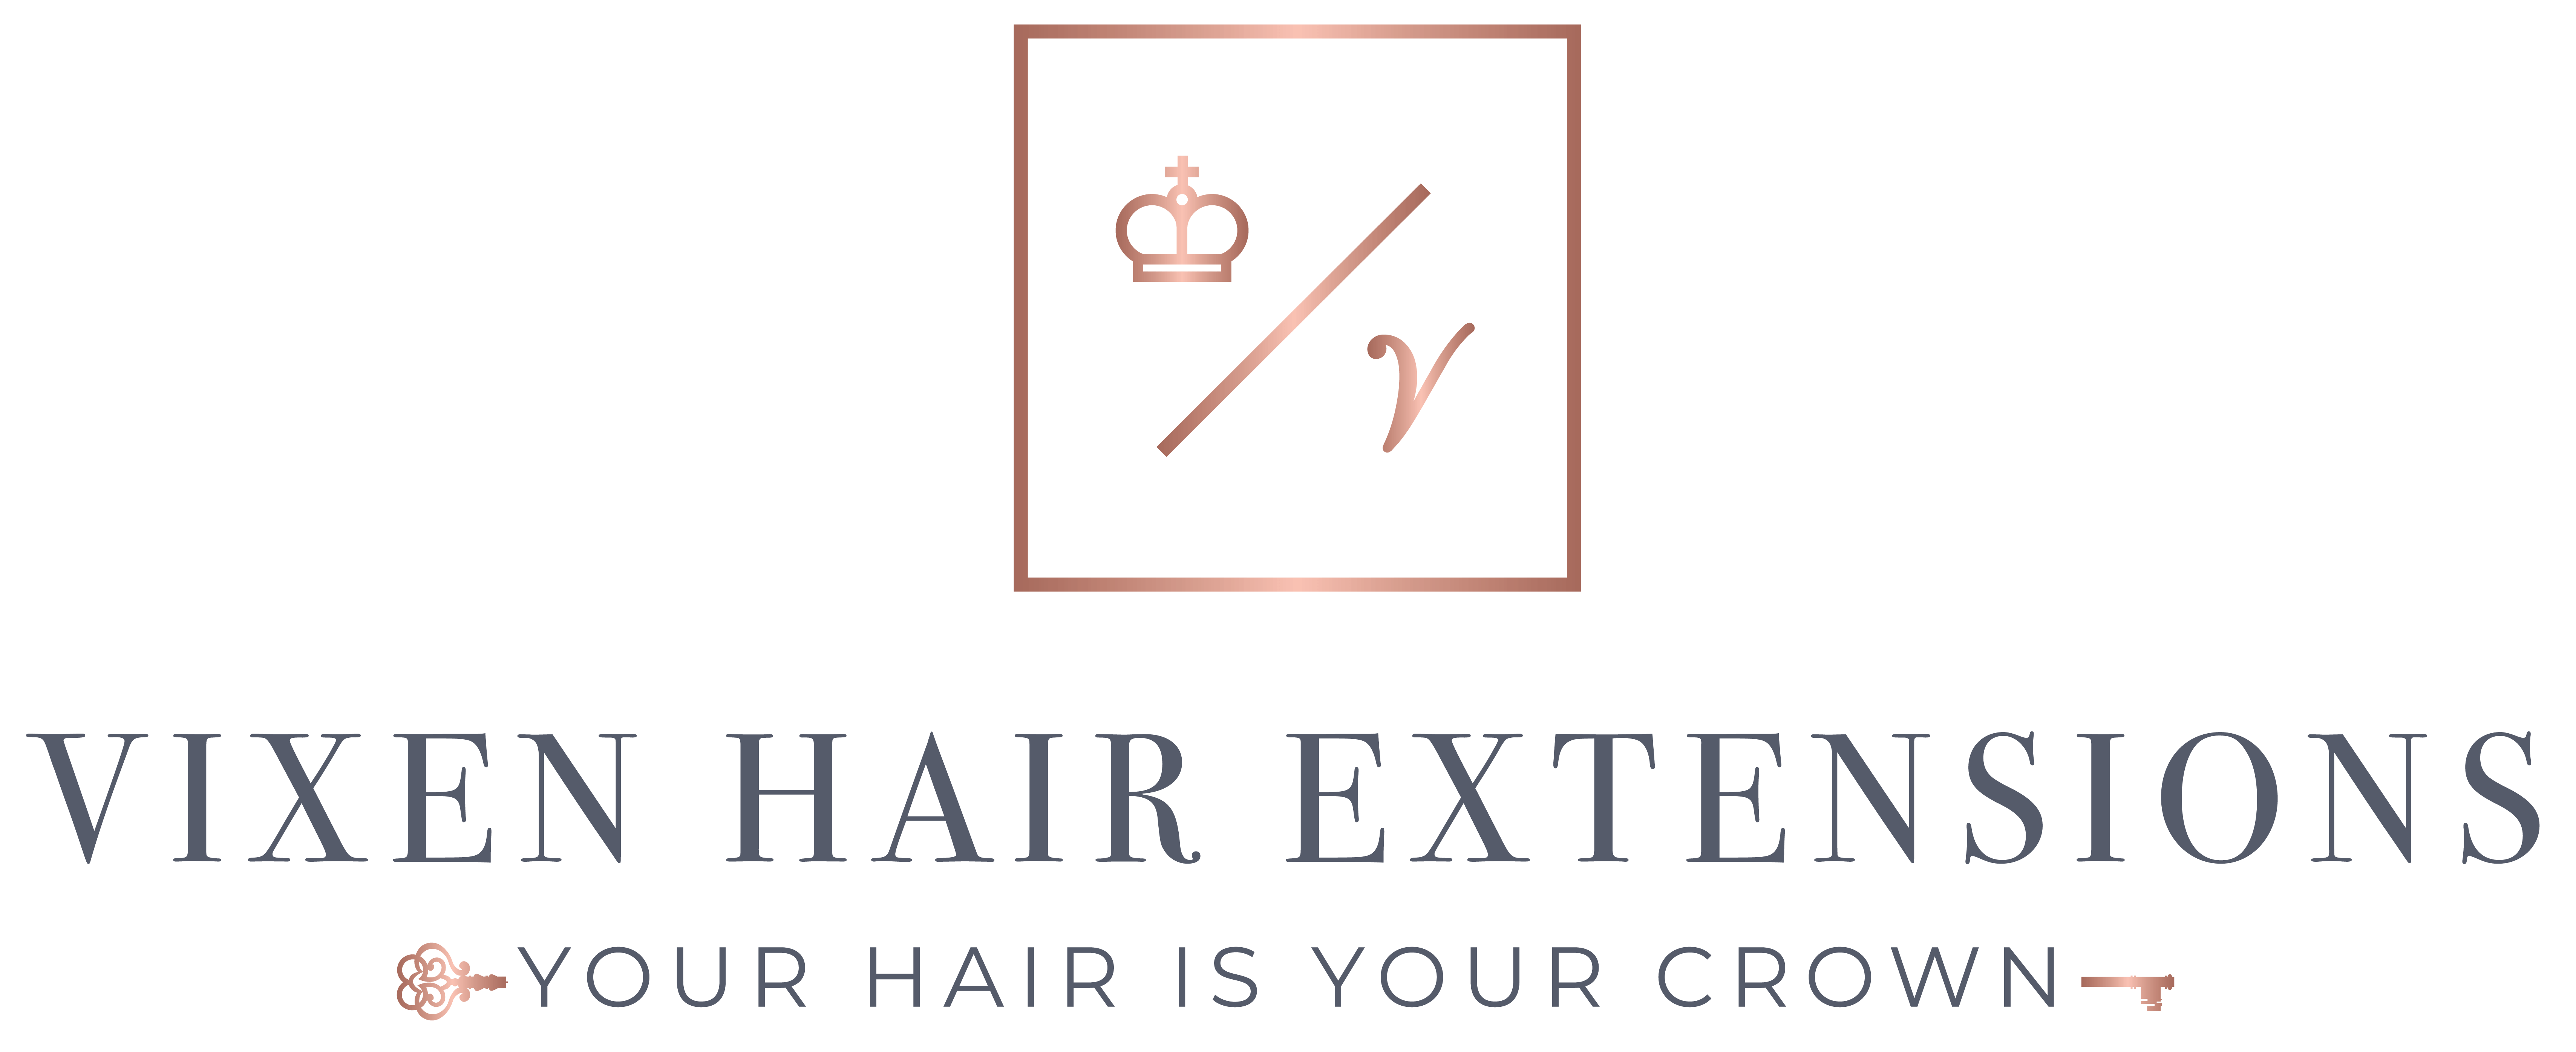 Vixen Hair Logo